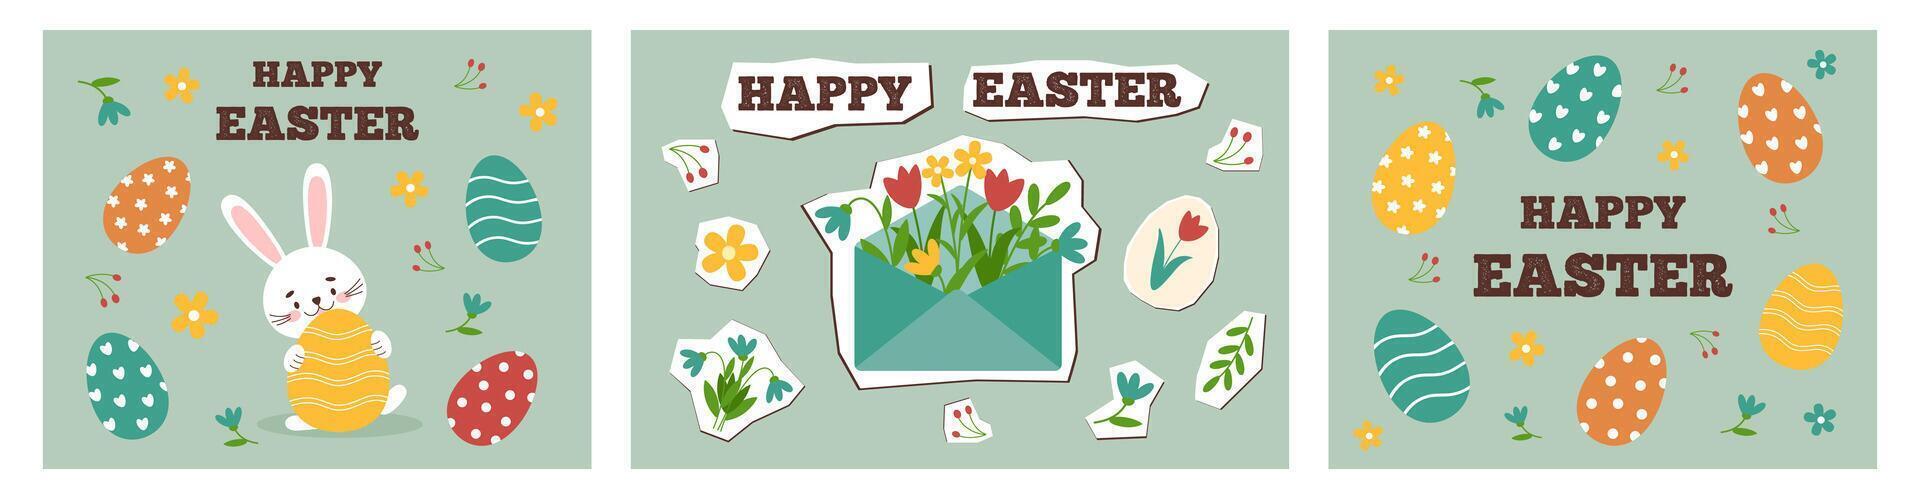 contento Pascua de Resurrección tarjetas conjunto en nuevo nostalgia estilo. mínimo tarjeta diseños con linda apliques elementos, vector ilustración modelo.